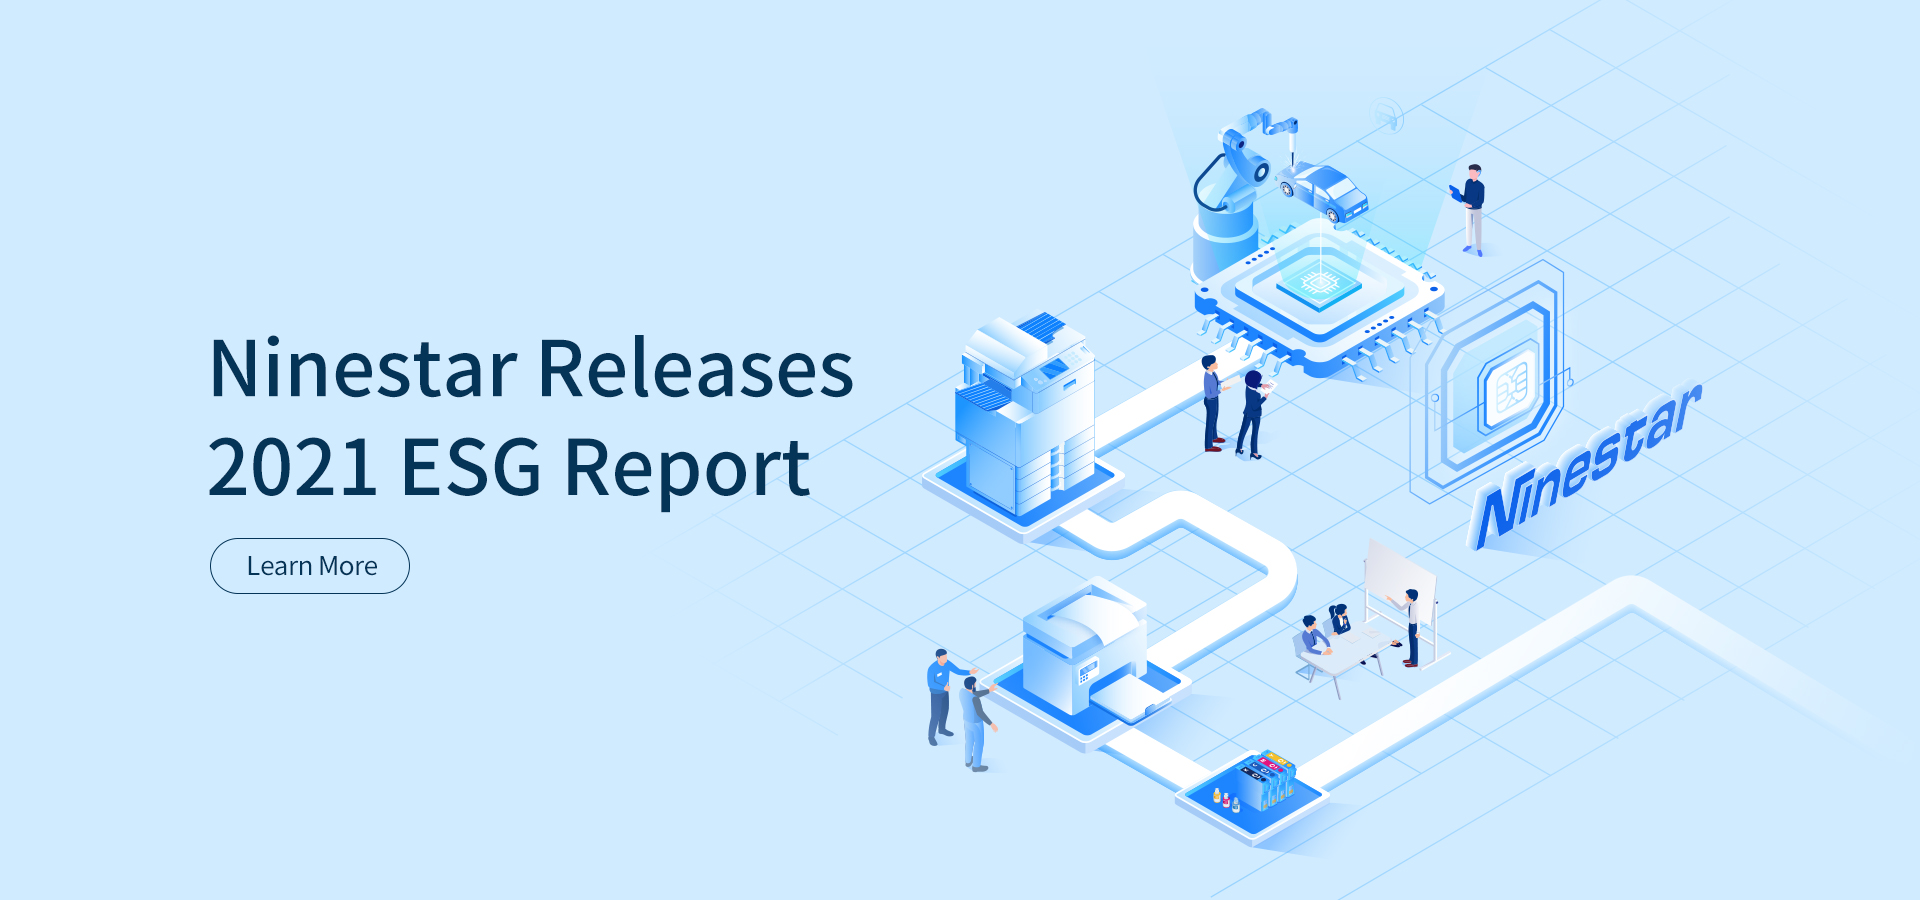 Ninestar Releases 2021 ESG Report